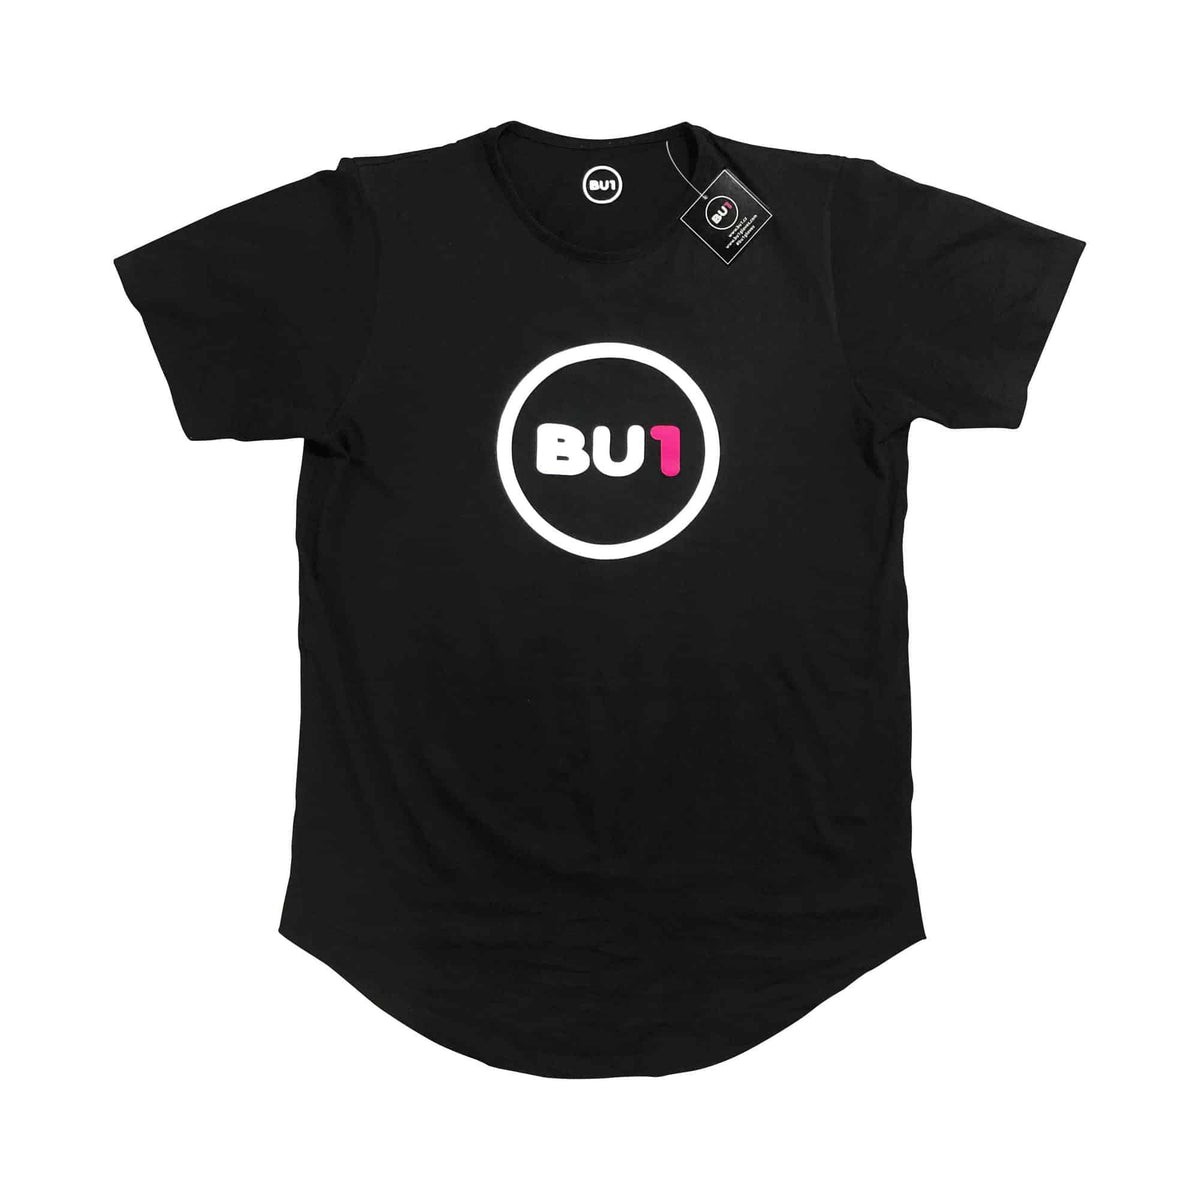 BU1 tričko černé